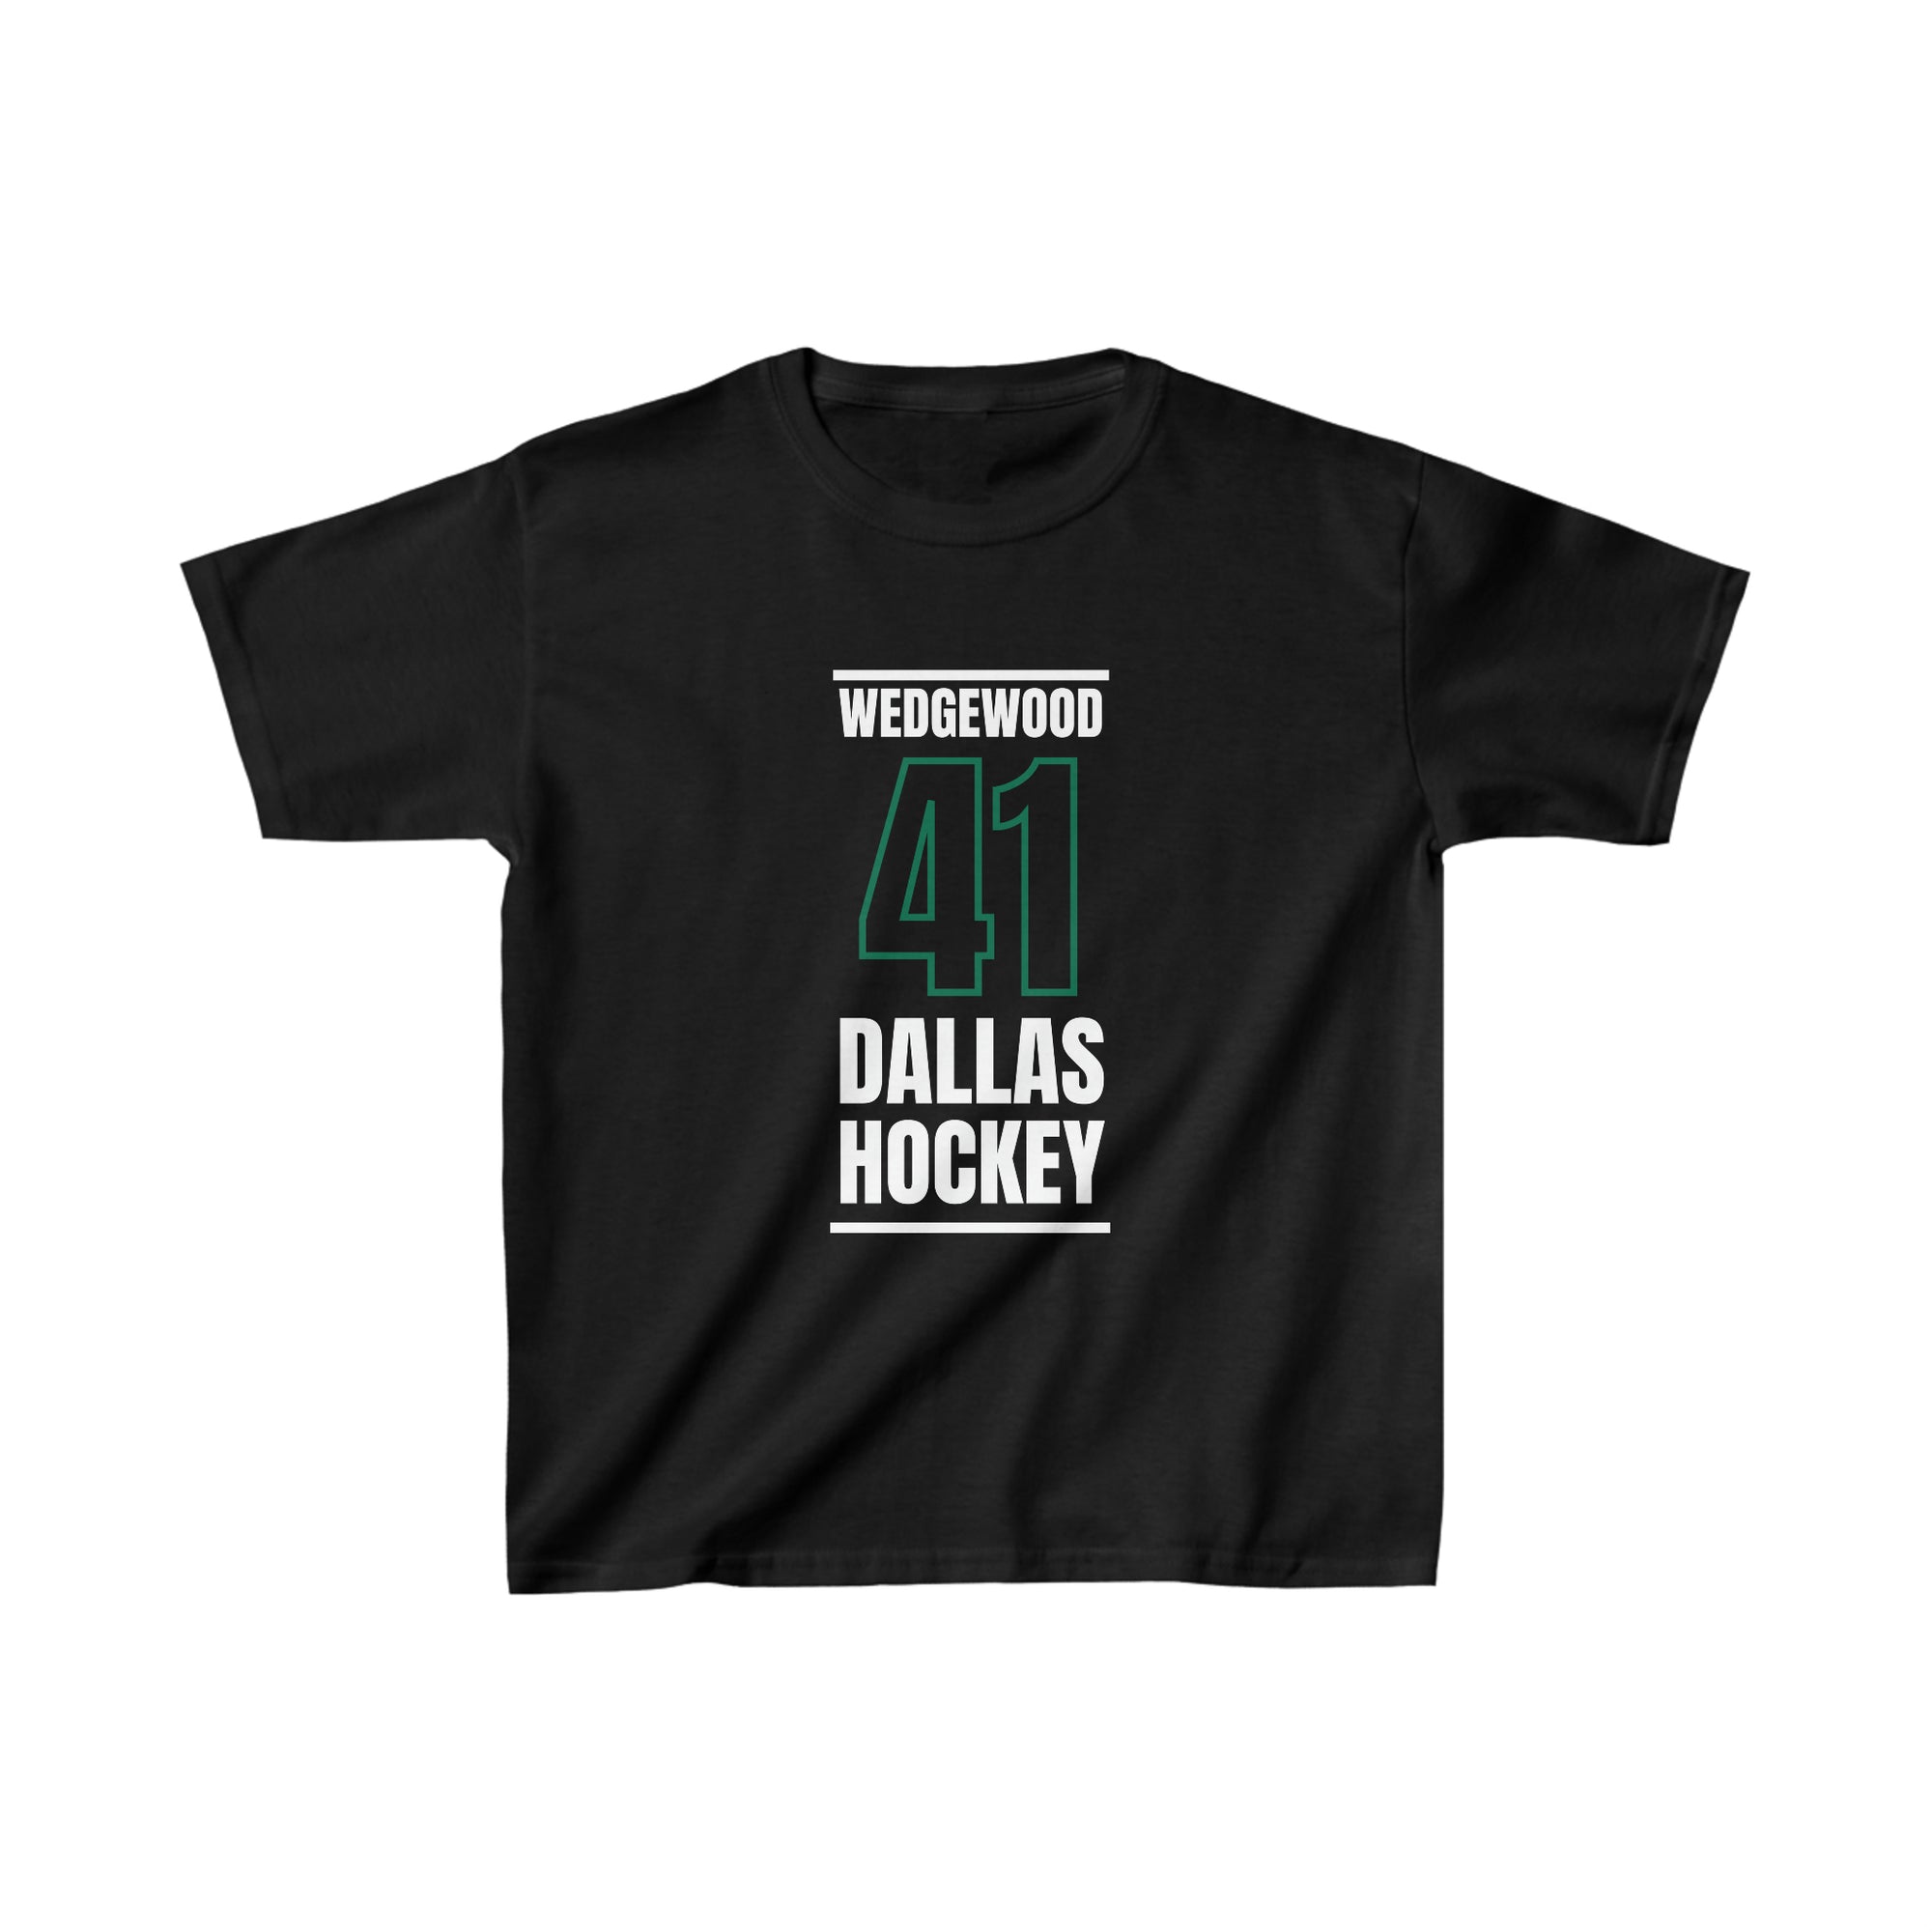 Wedgewood 41 Dallas Hockey Black Vertical Design Kids Tee